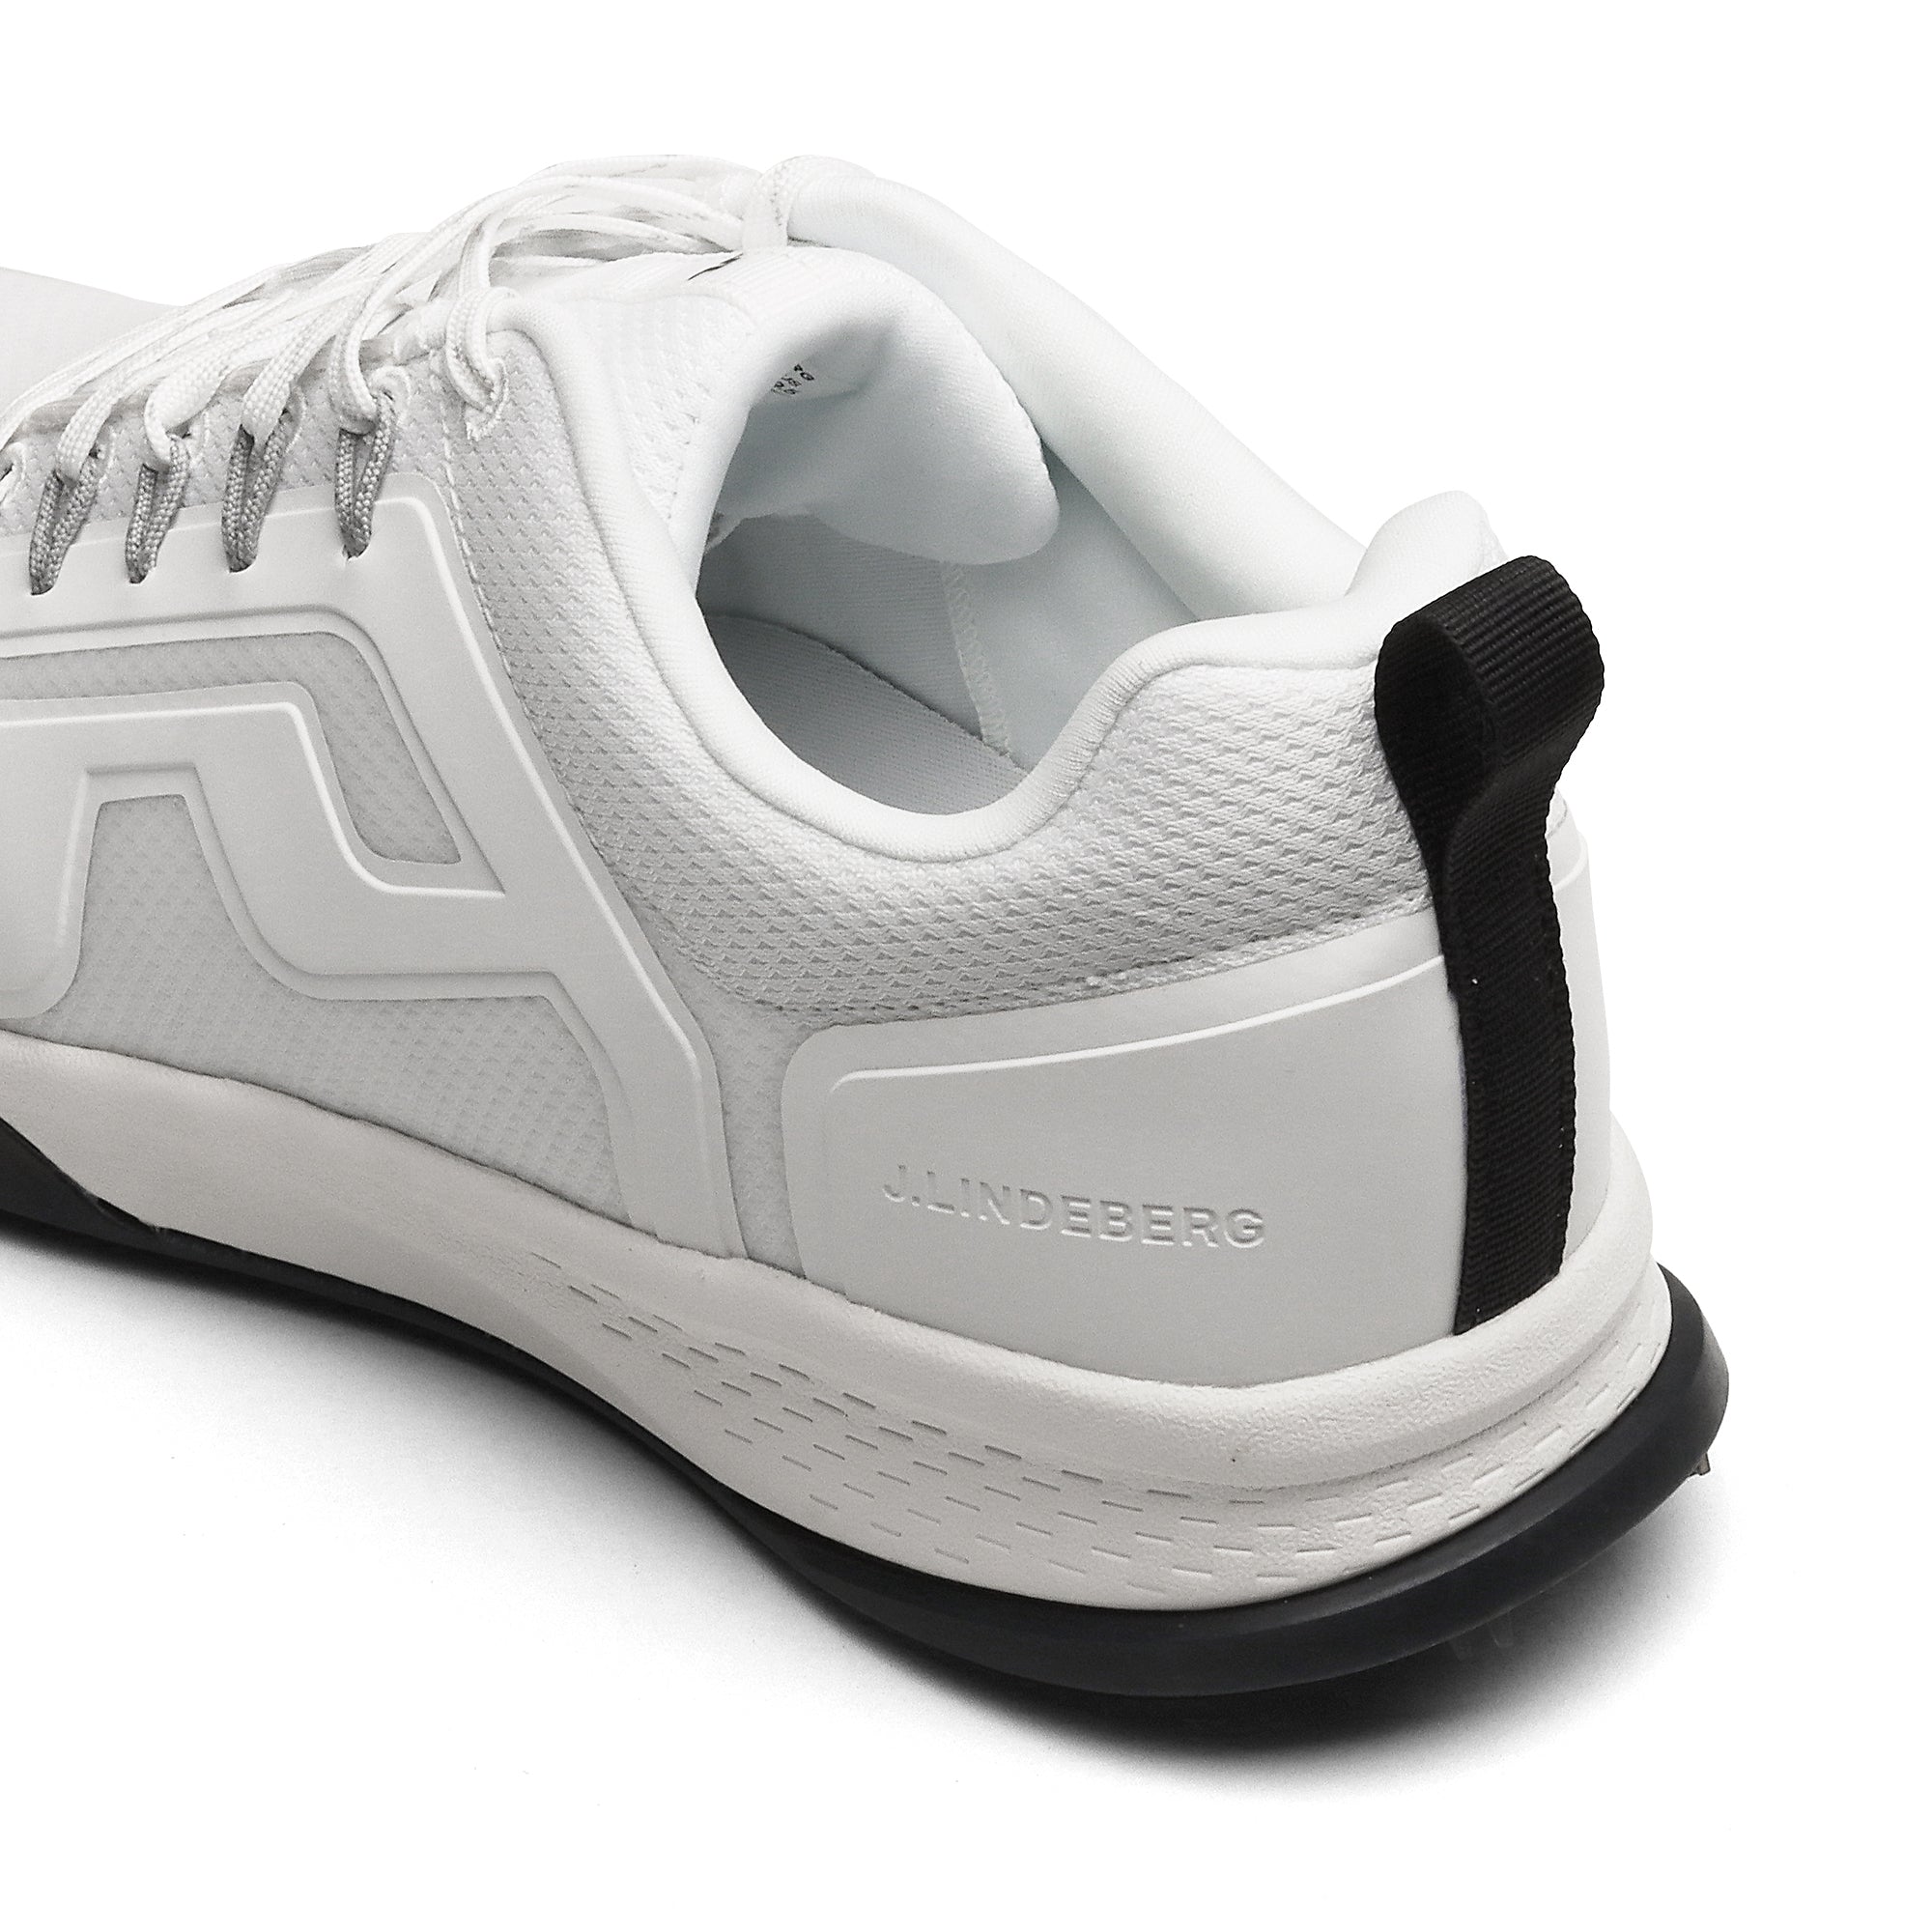 J.Lindeberg Range Finder Golf Shoes White 3